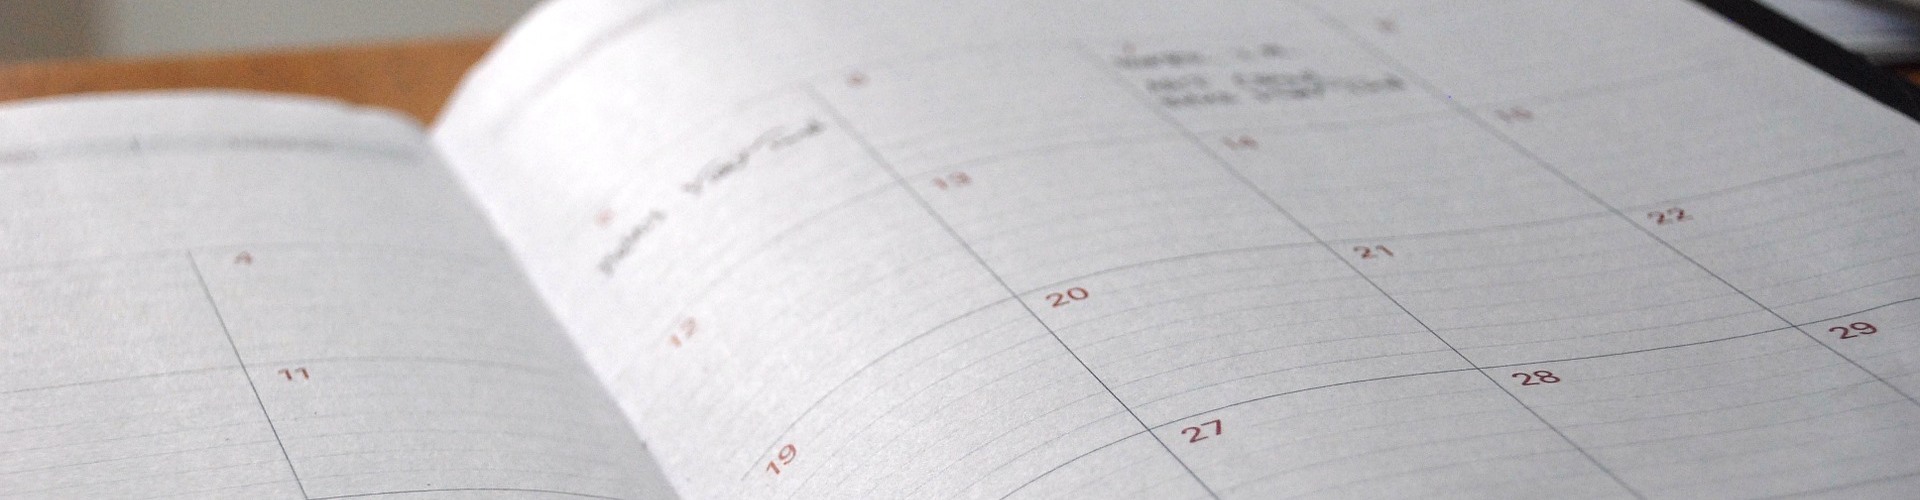 Ein aufgeschlagener Kalender liegt auf einem Holztisch.